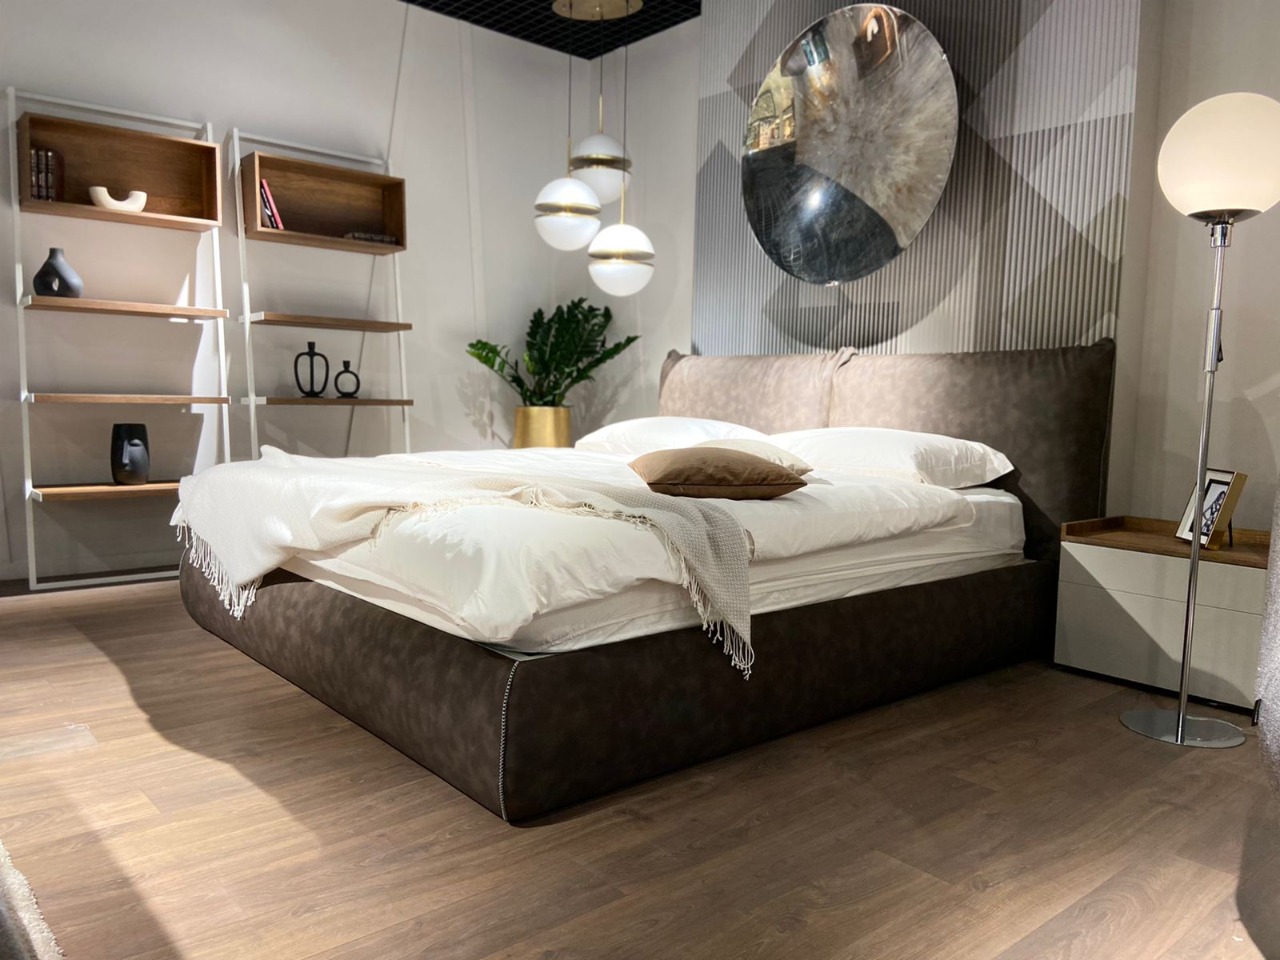 Кровать Tomasella Sogno с коробом для белья — ₽, купить у официального дилера Nicolettihome